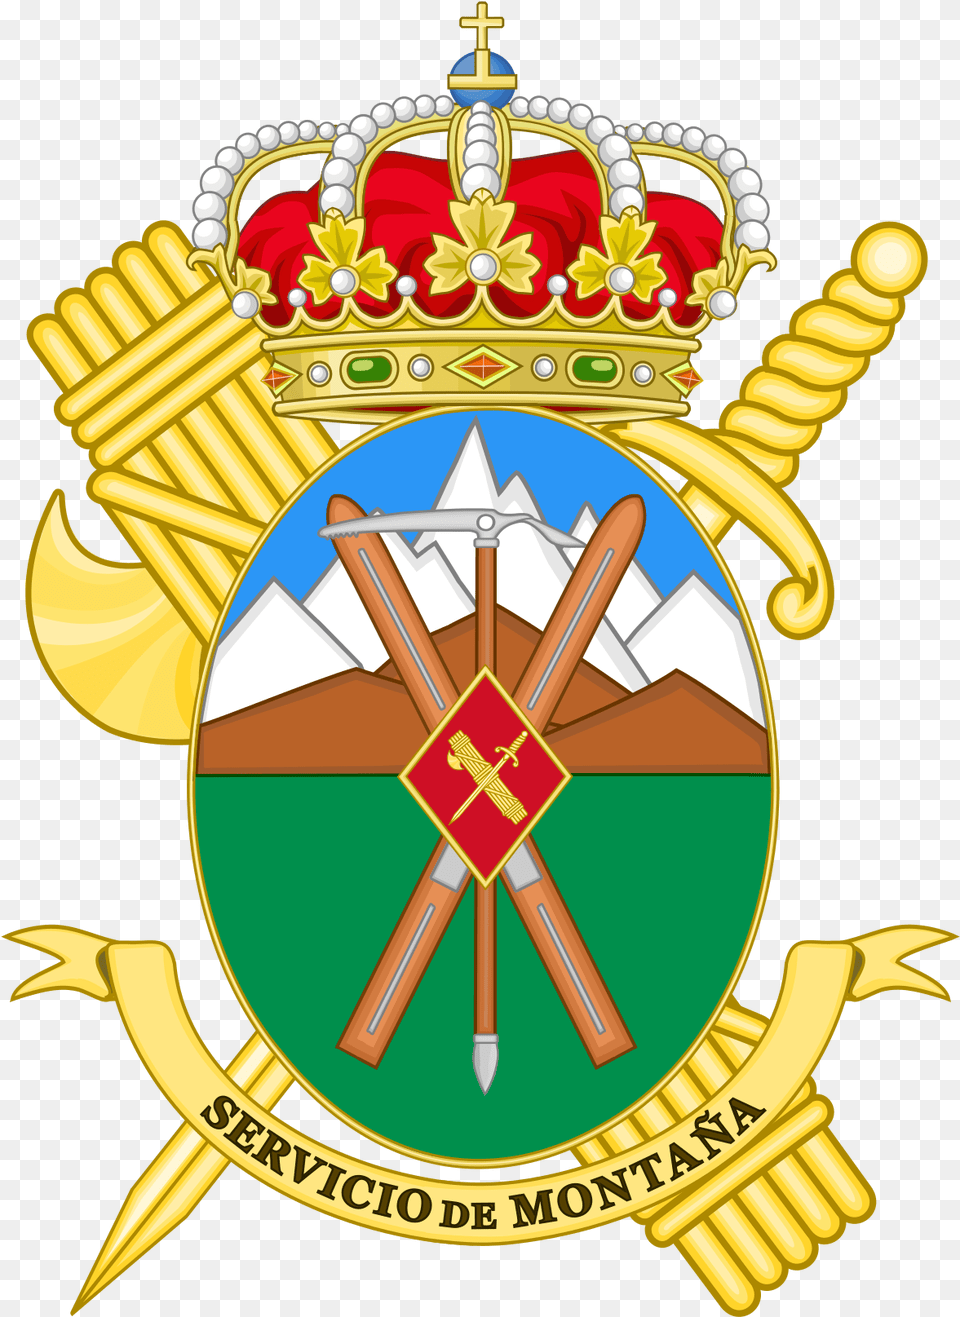 Grupos De Rescate E Intervencin En Guardia Civil Coat Of Arms, Badge, Logo, Symbol, Emblem Png